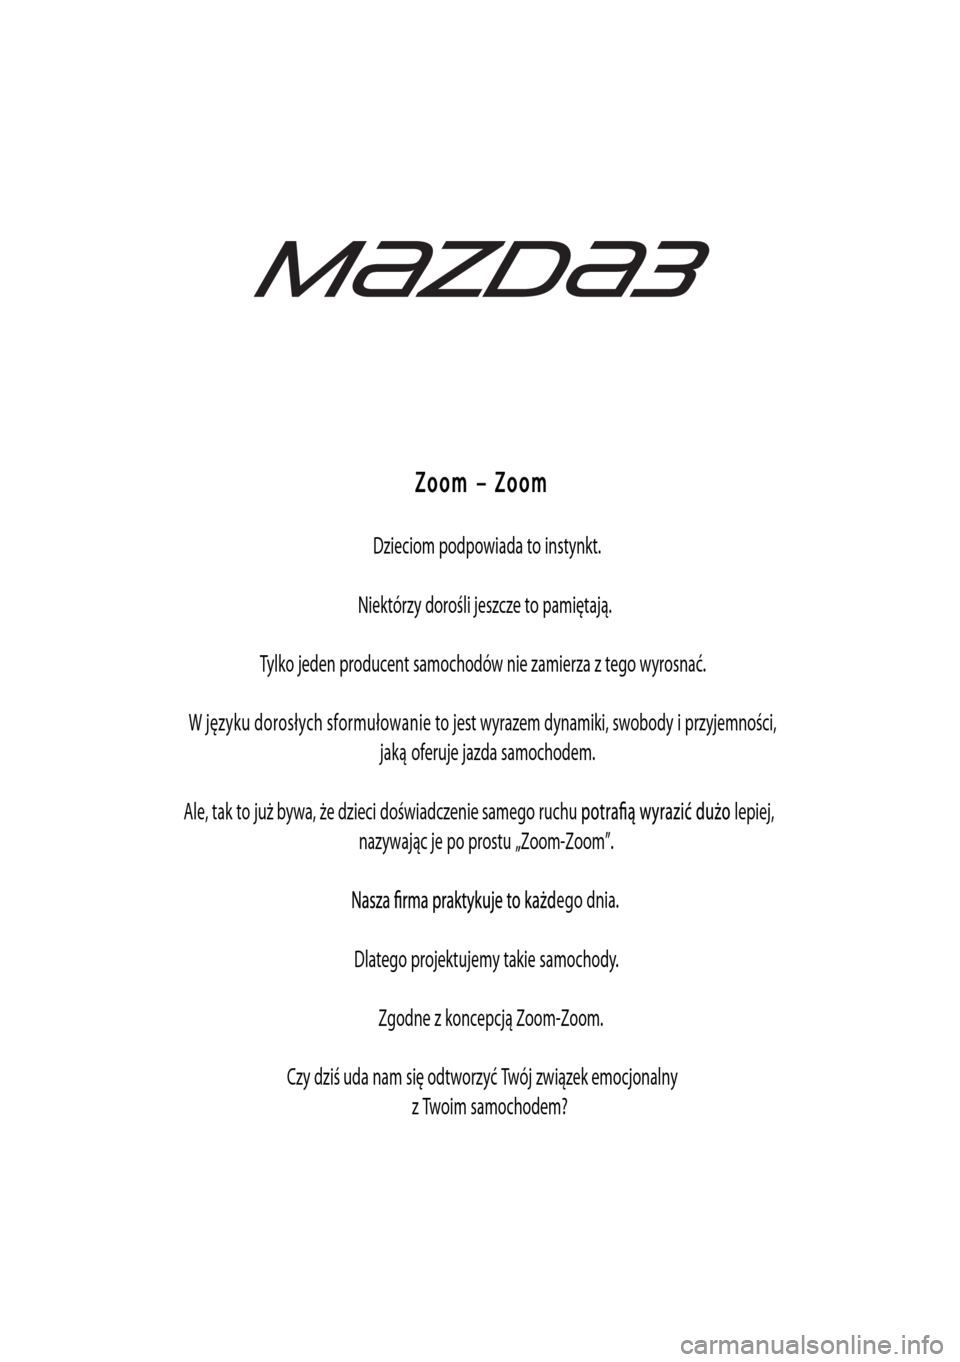 MAZDA MODEL 3 HATCHBACK 2015  Instrukcja Obsługi (in Polish) Zoom – Zoom
Dzieciom podpowiada to instynkt.
Niektórzy dorośli jeszcze to pamiętają.
Tylko jeden producent samochodów nie zamierza z tego wyrosnać.
W języku dorosłych sformułowanie to jest 